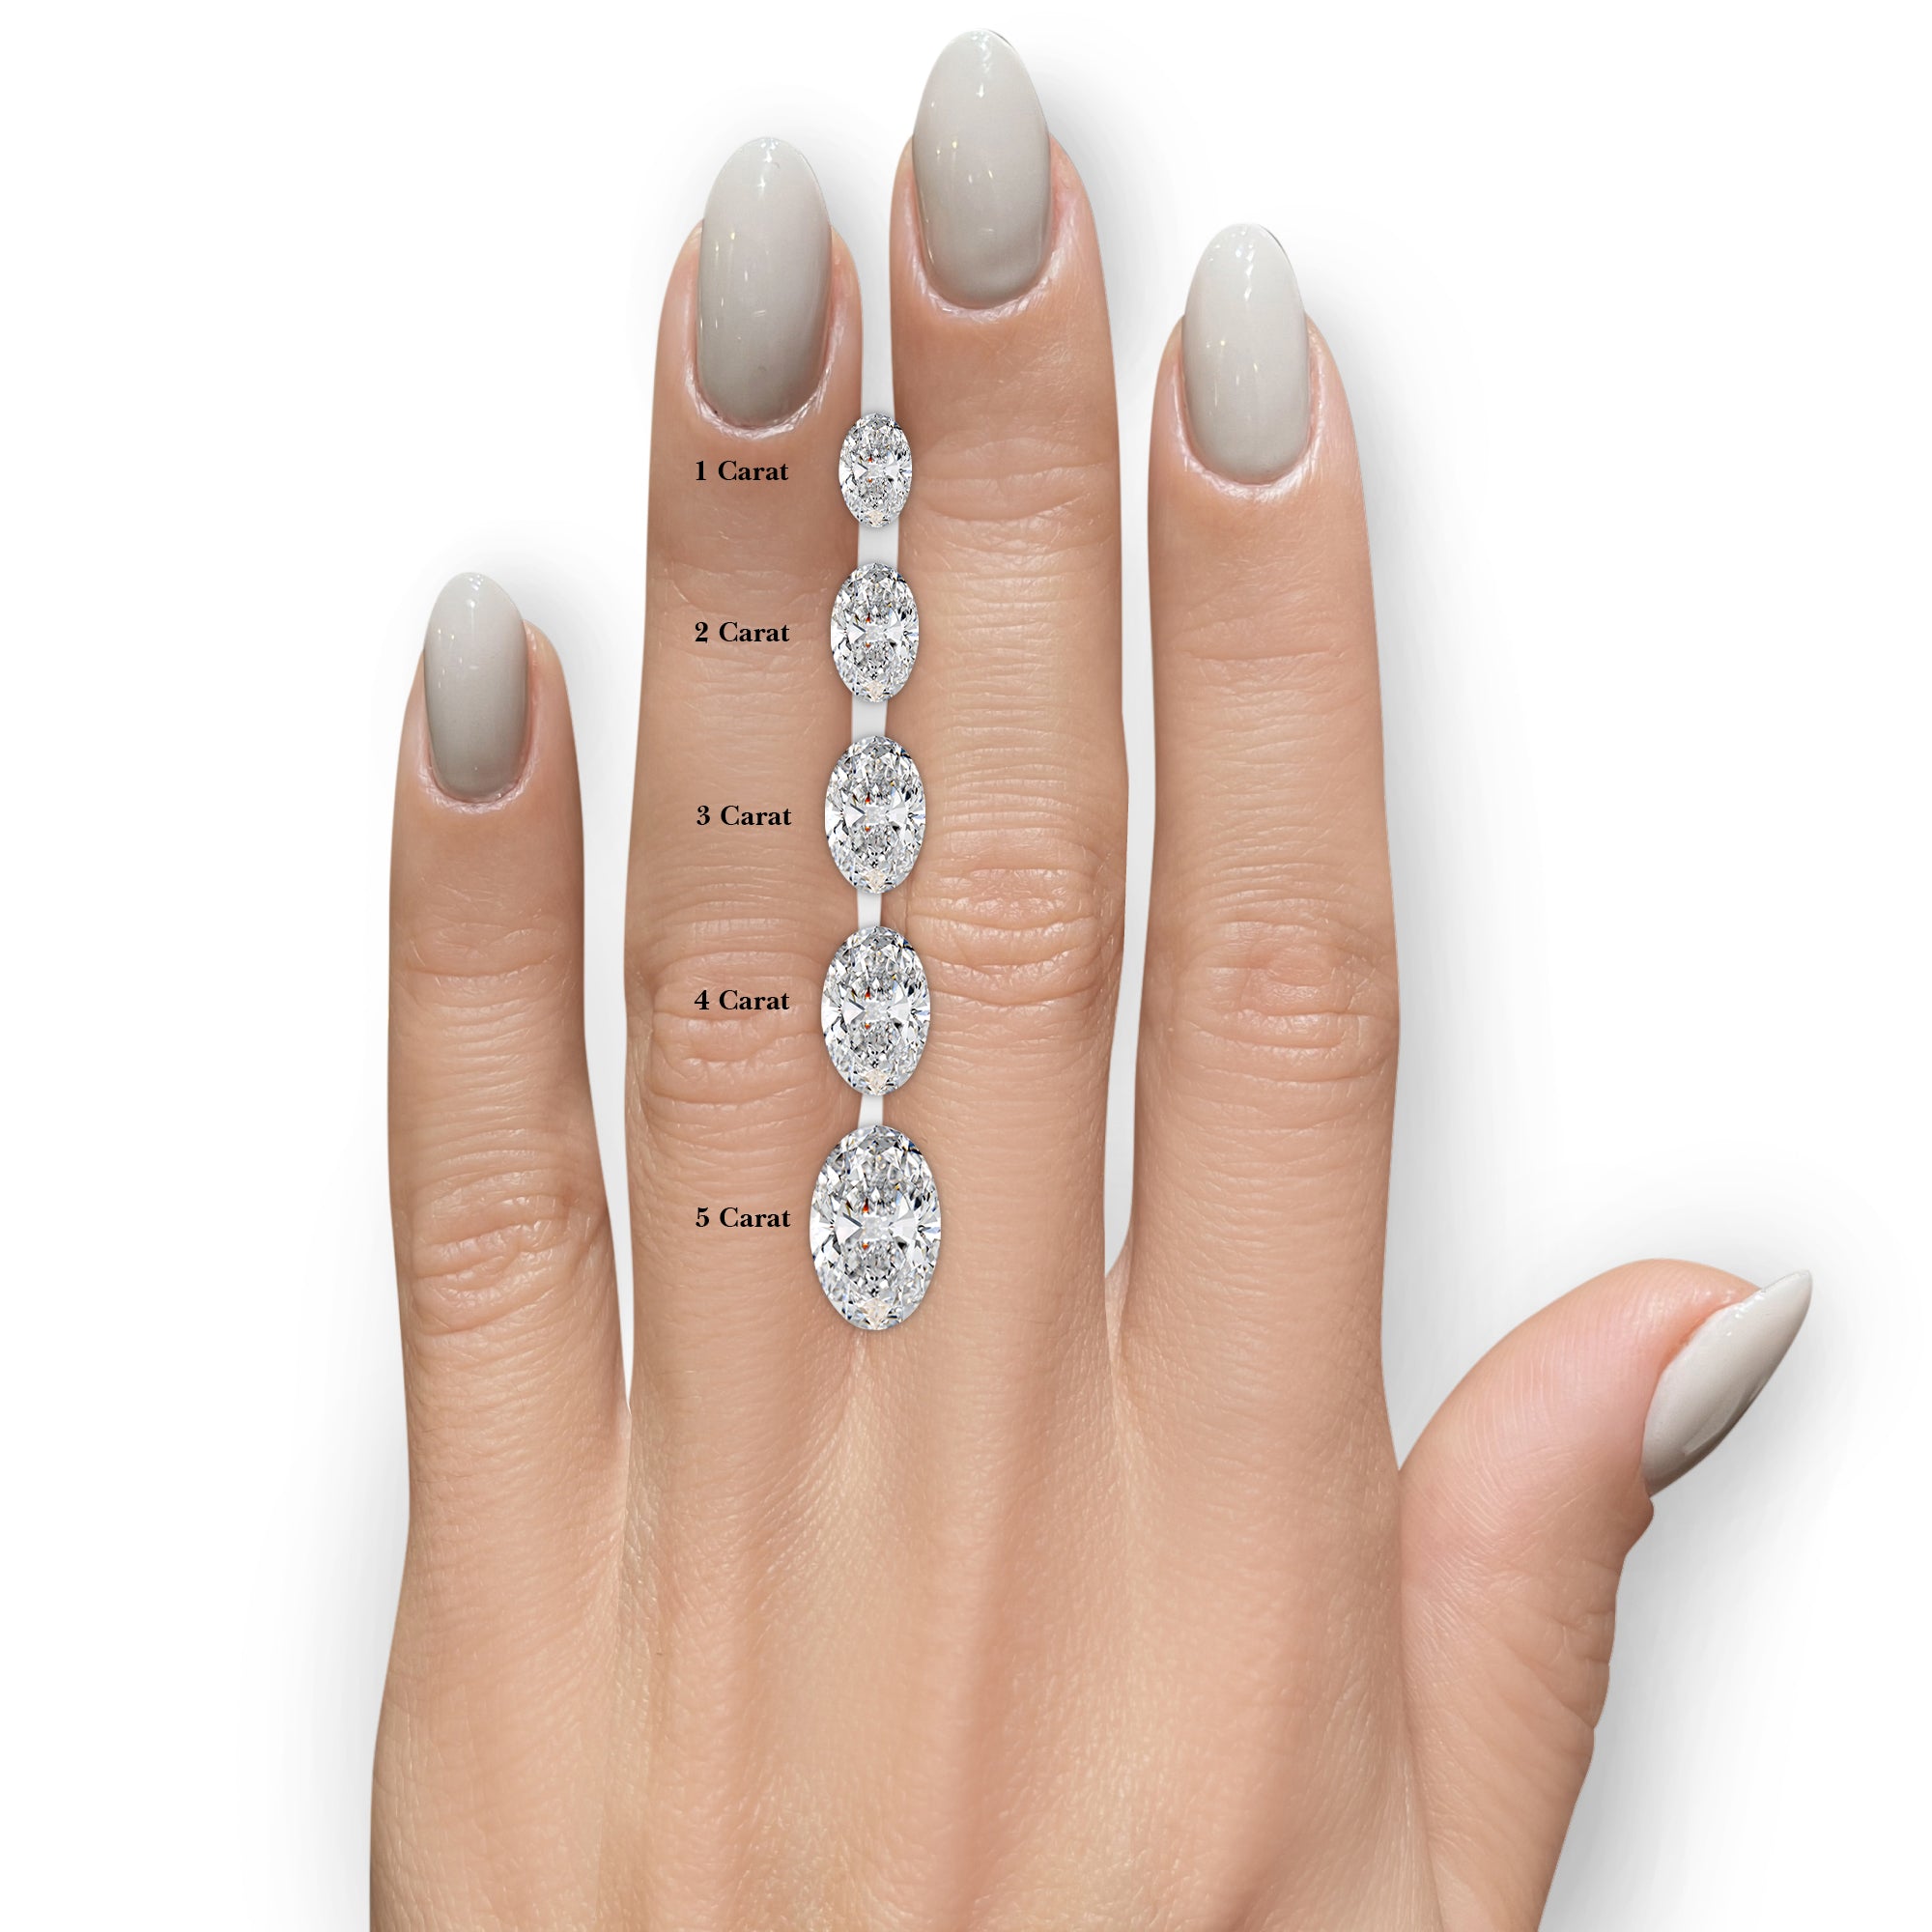 Rebecca Moissanite & Gemstones Ring -Platinum